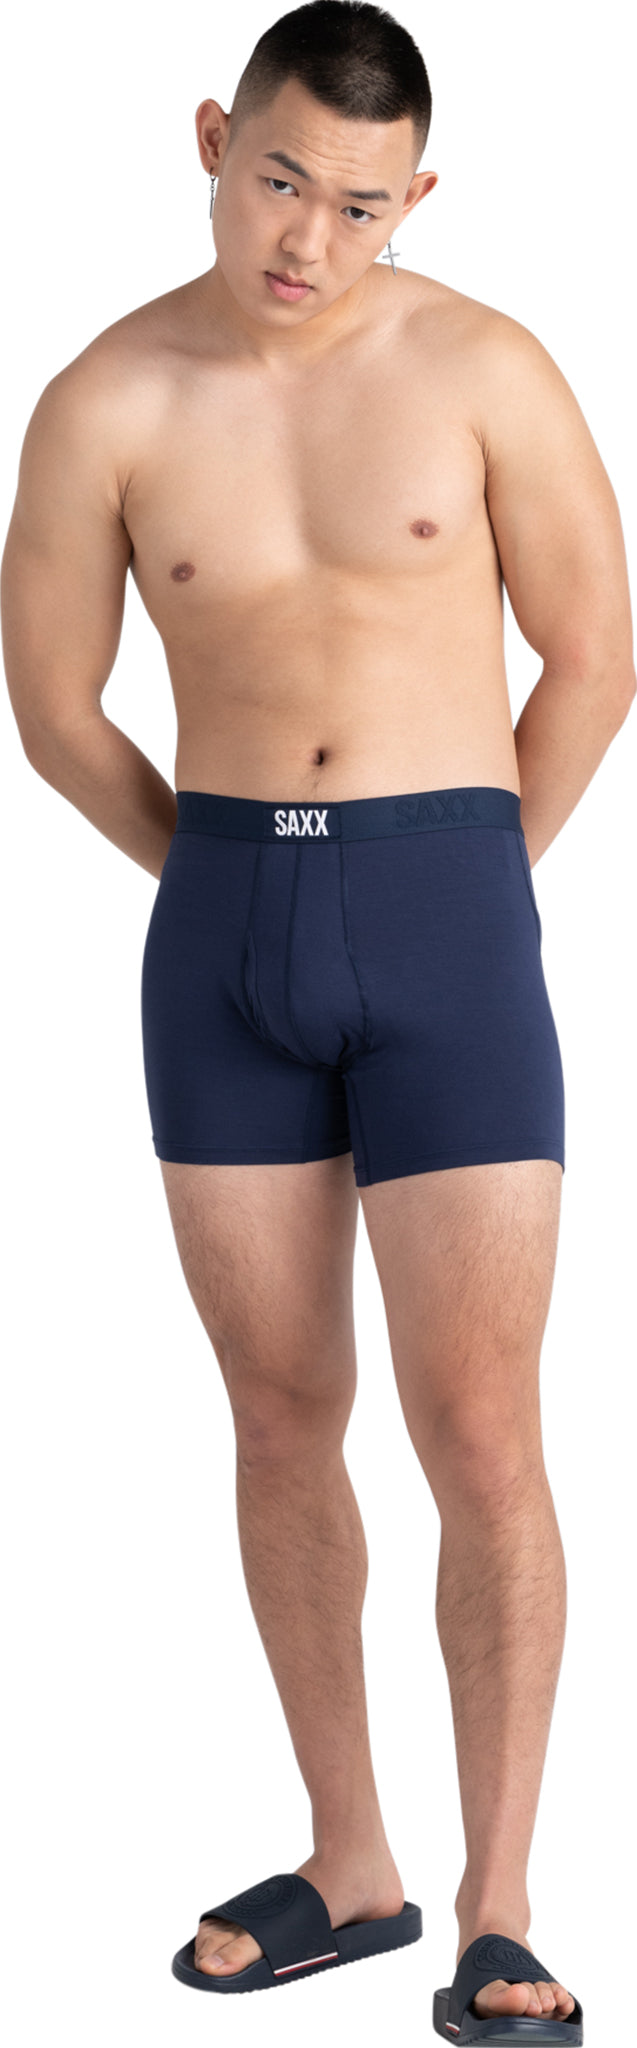 SAXX DropTemp Cooling Cotton 3-Pack Boxer Briefs - Men's